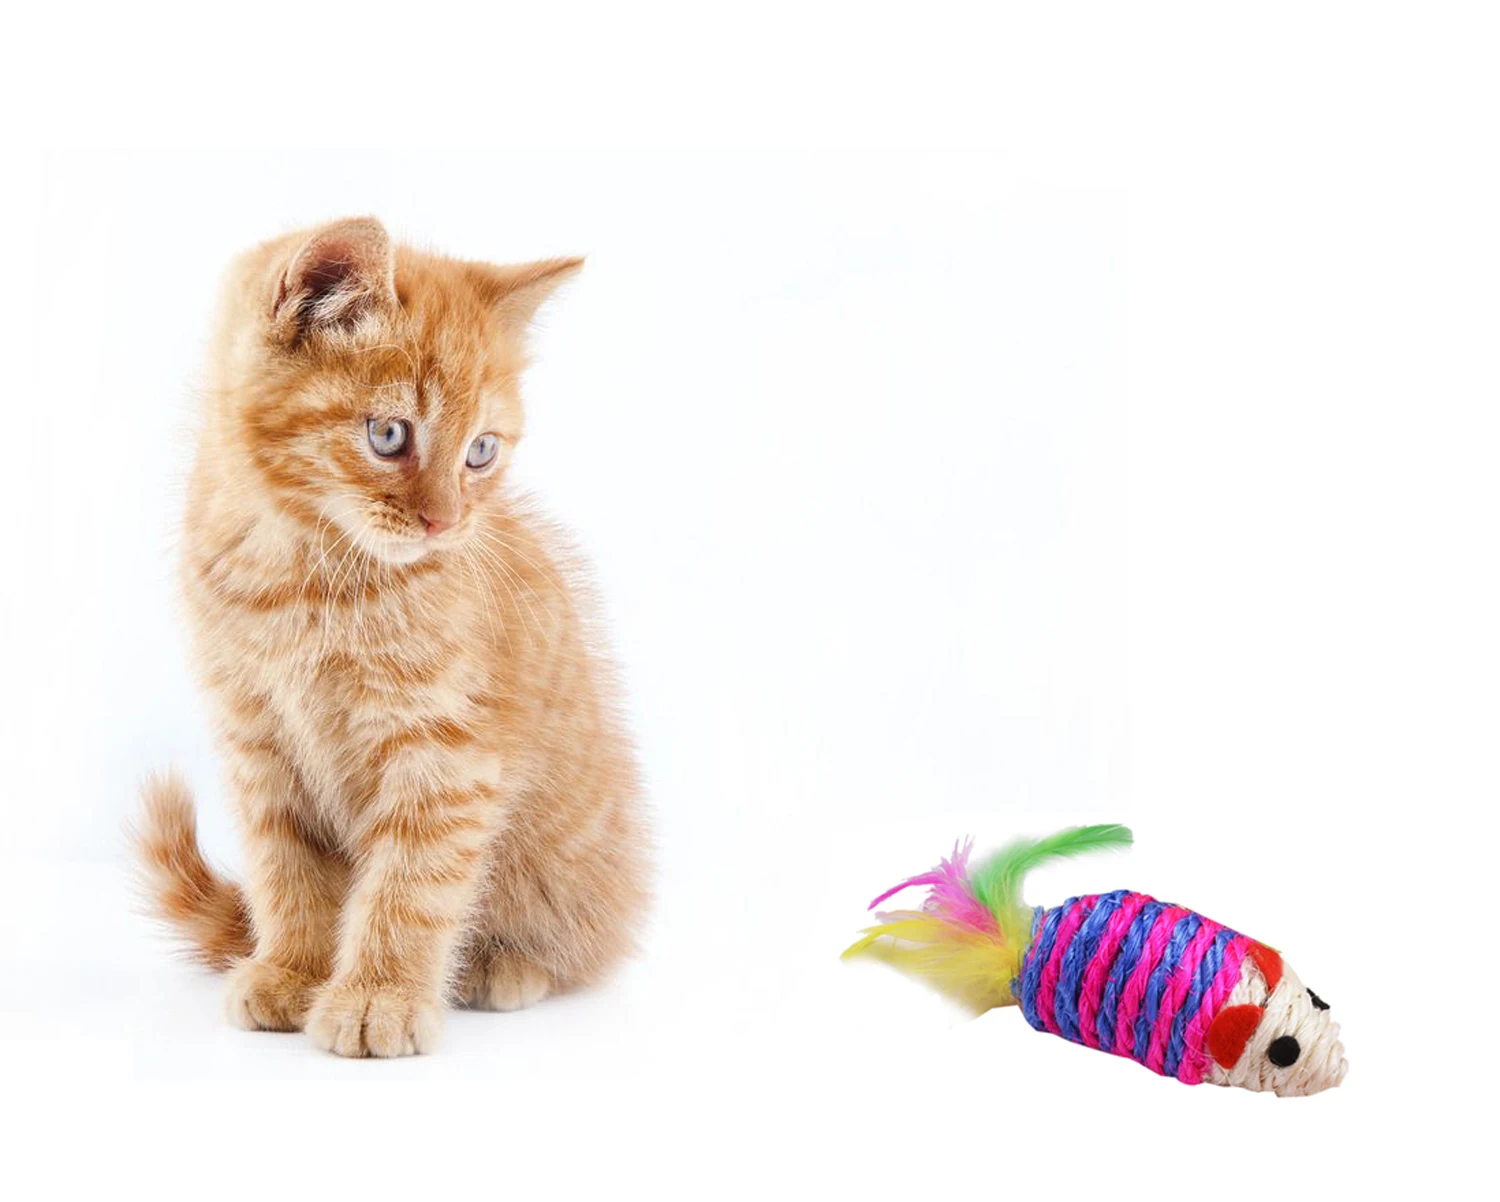 10 шт. игрушки для кошек Набор для Kitty включает в себя кошачьи игрушки плюшевые мыши Когтеточка в форме шара и прорезыватель для домашнего животного игрушки